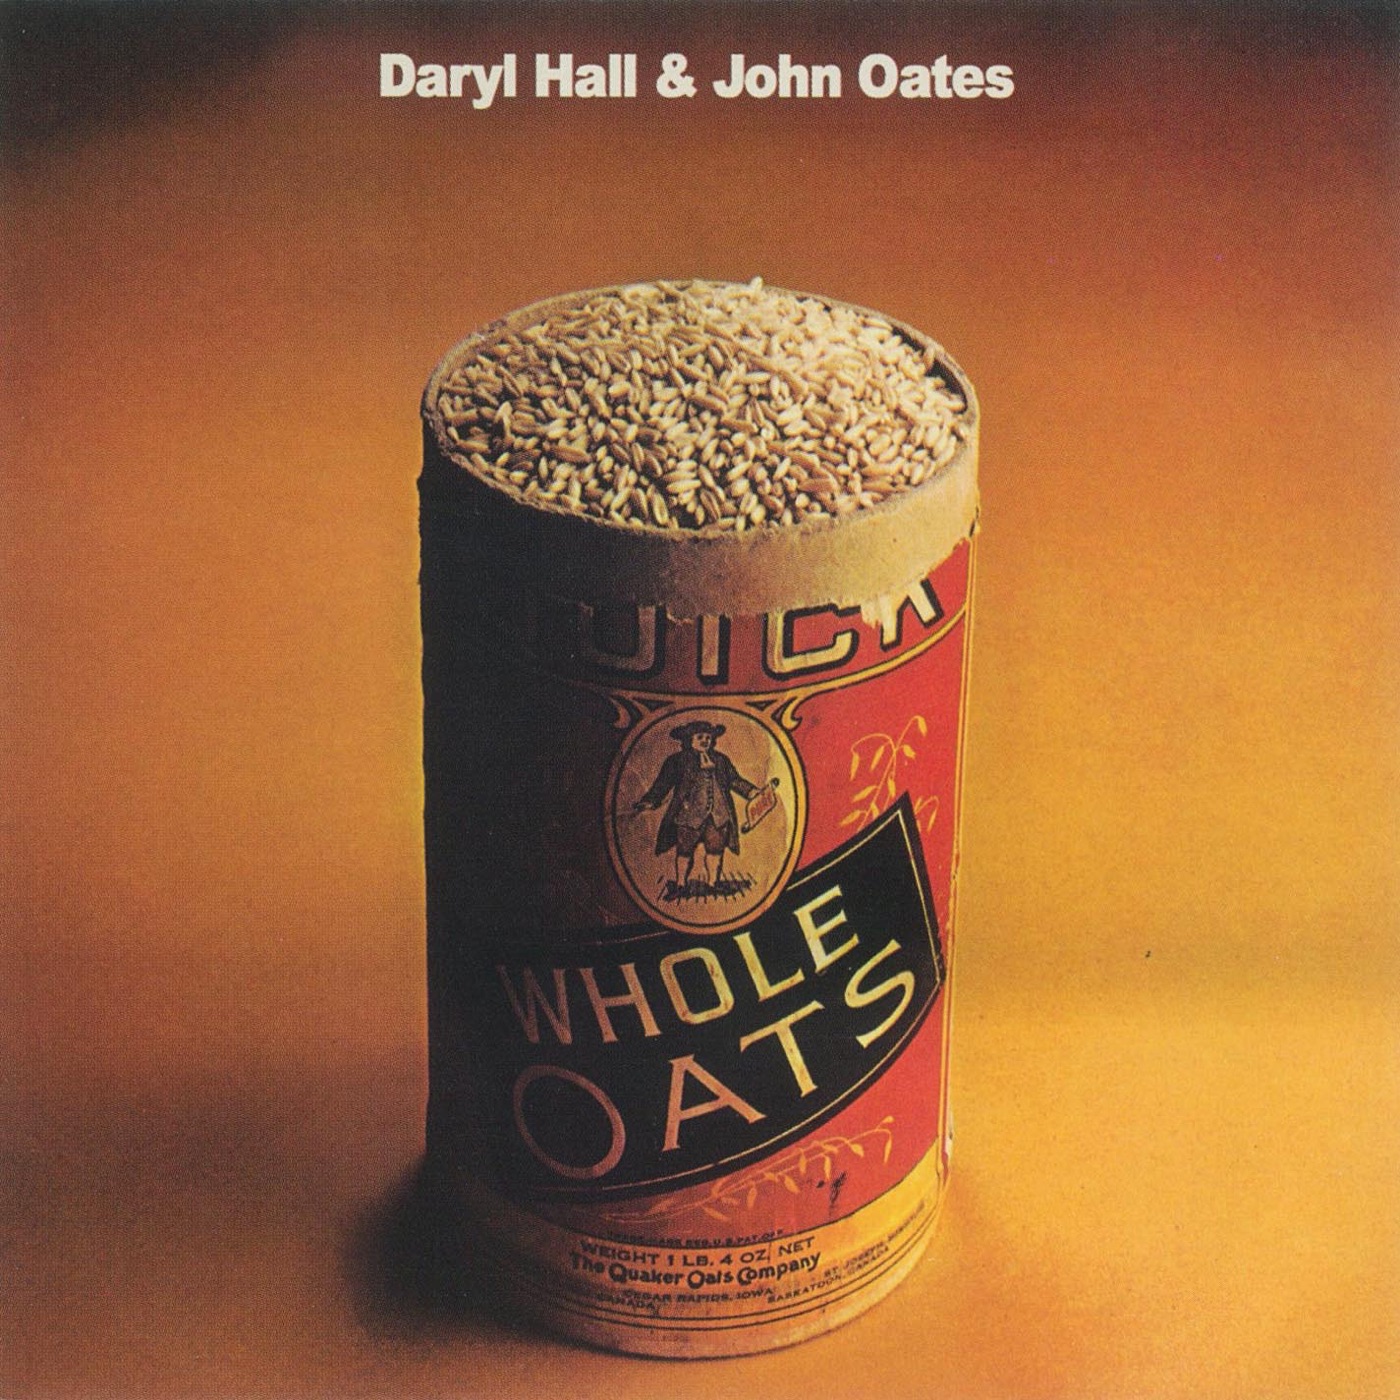 Whole Oats by Daryl Hall & John Oates